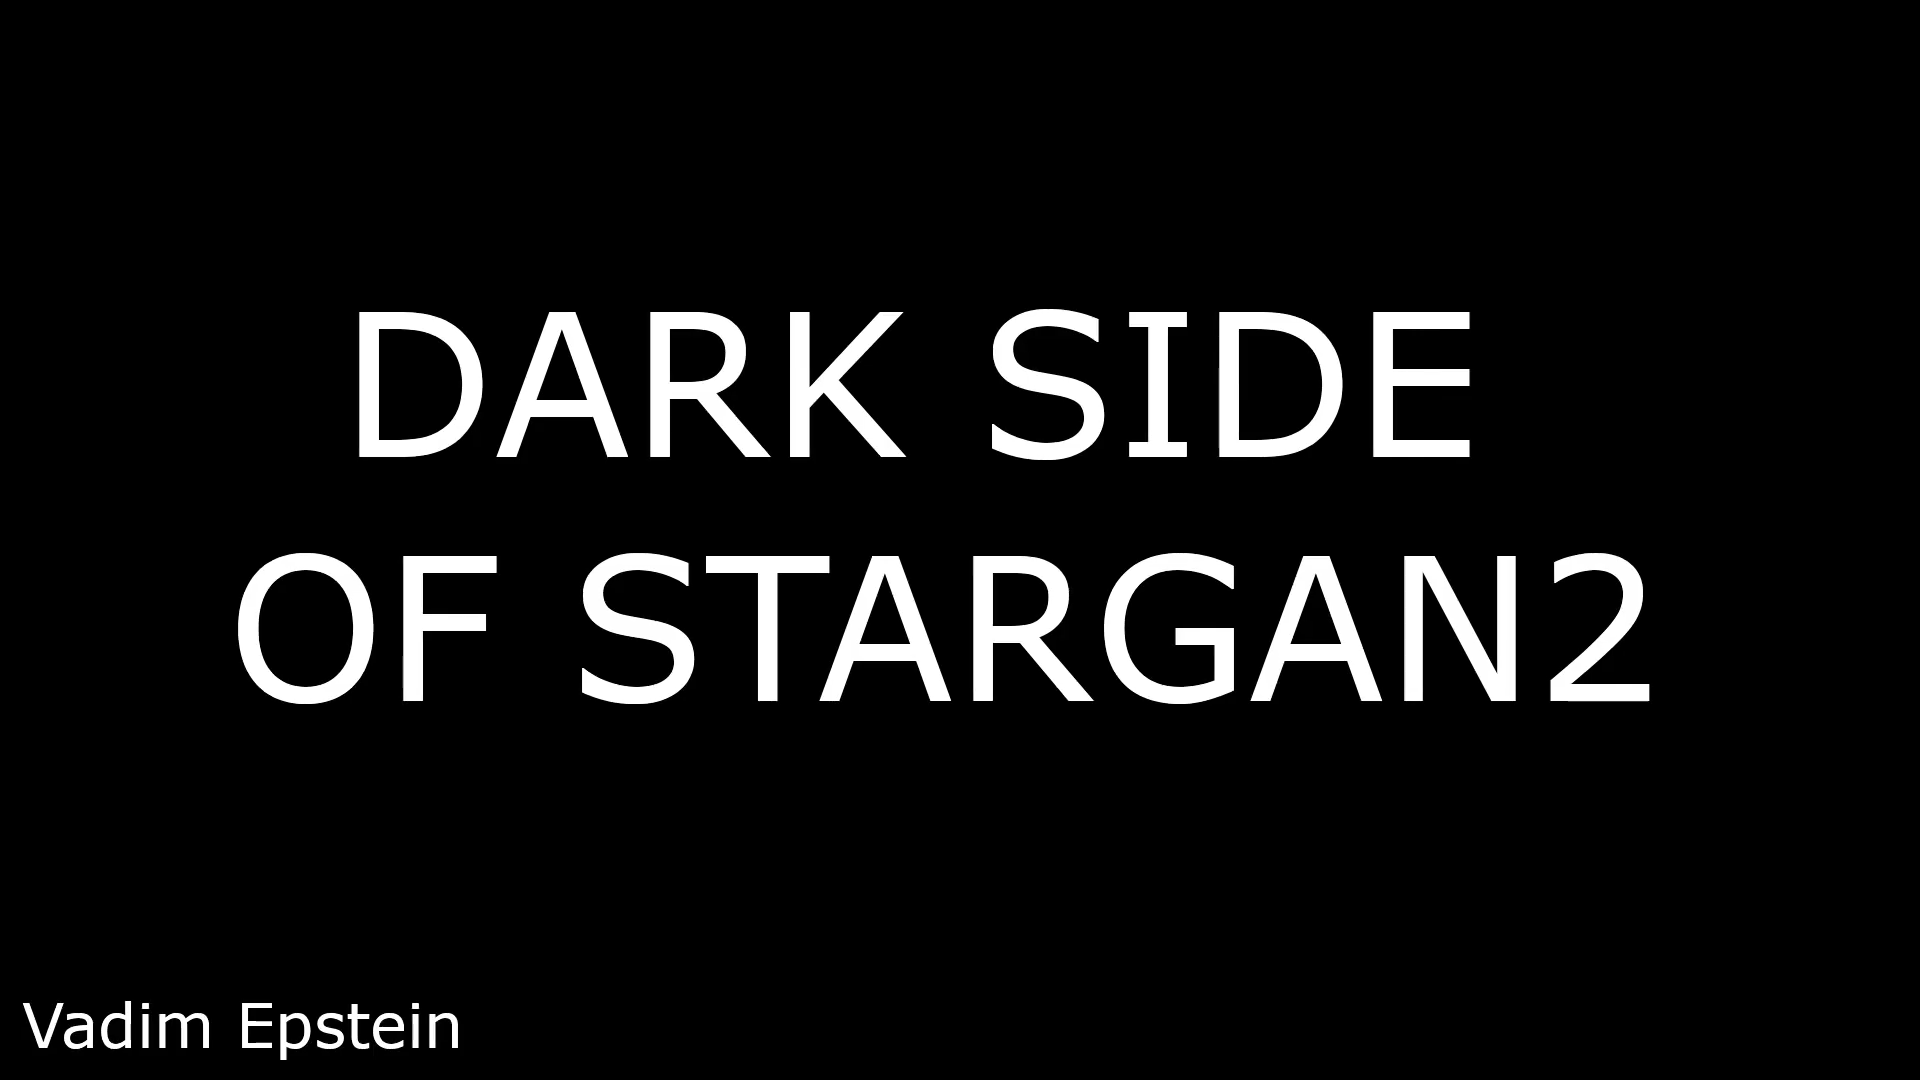 Dark side of StarGAN2